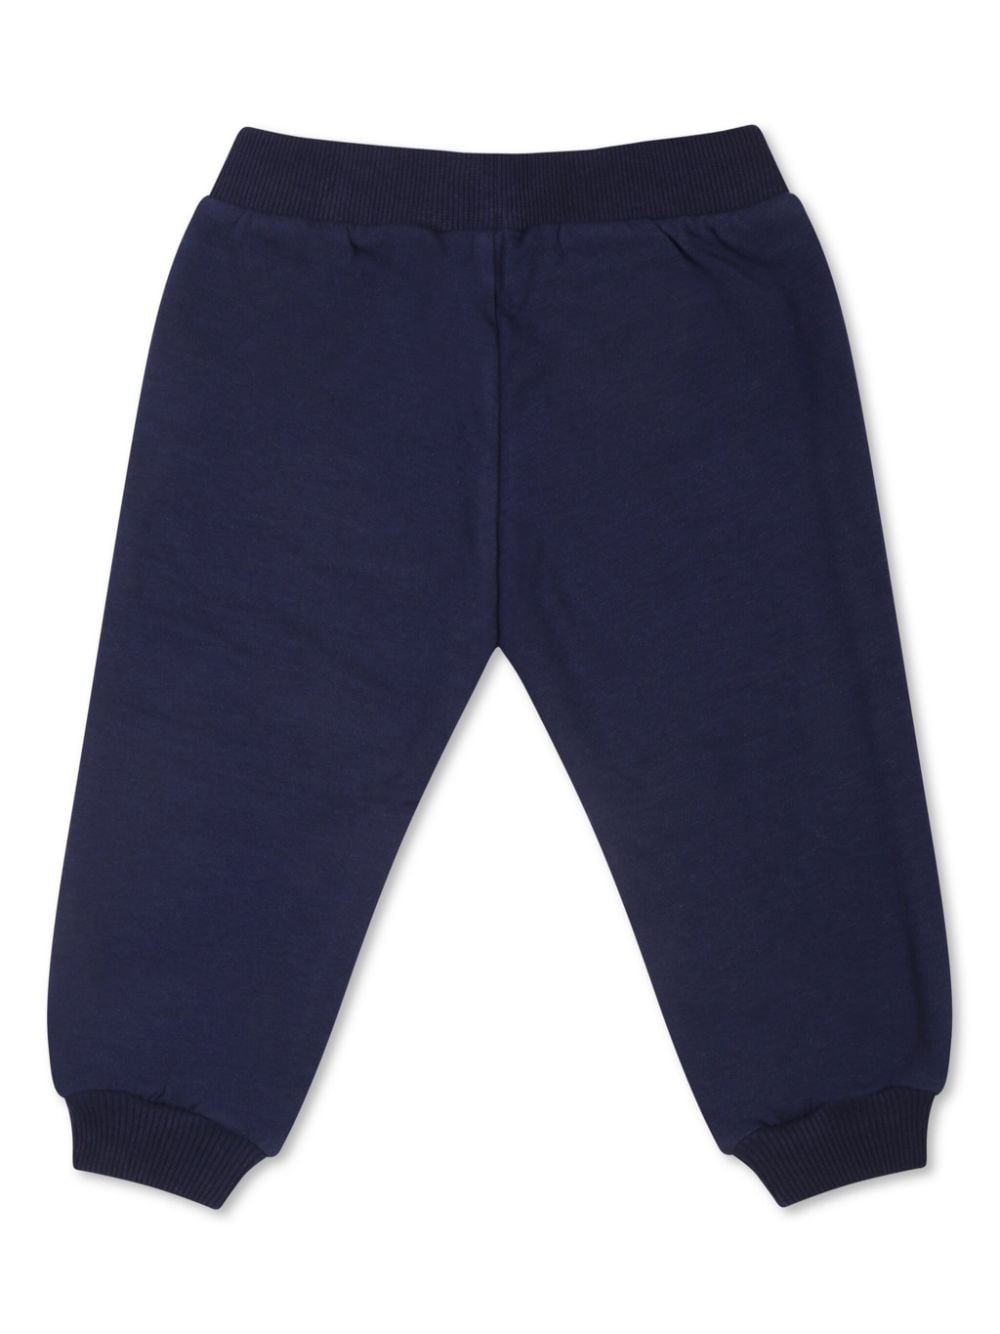 Pantalone per neonato in cotone blu navy